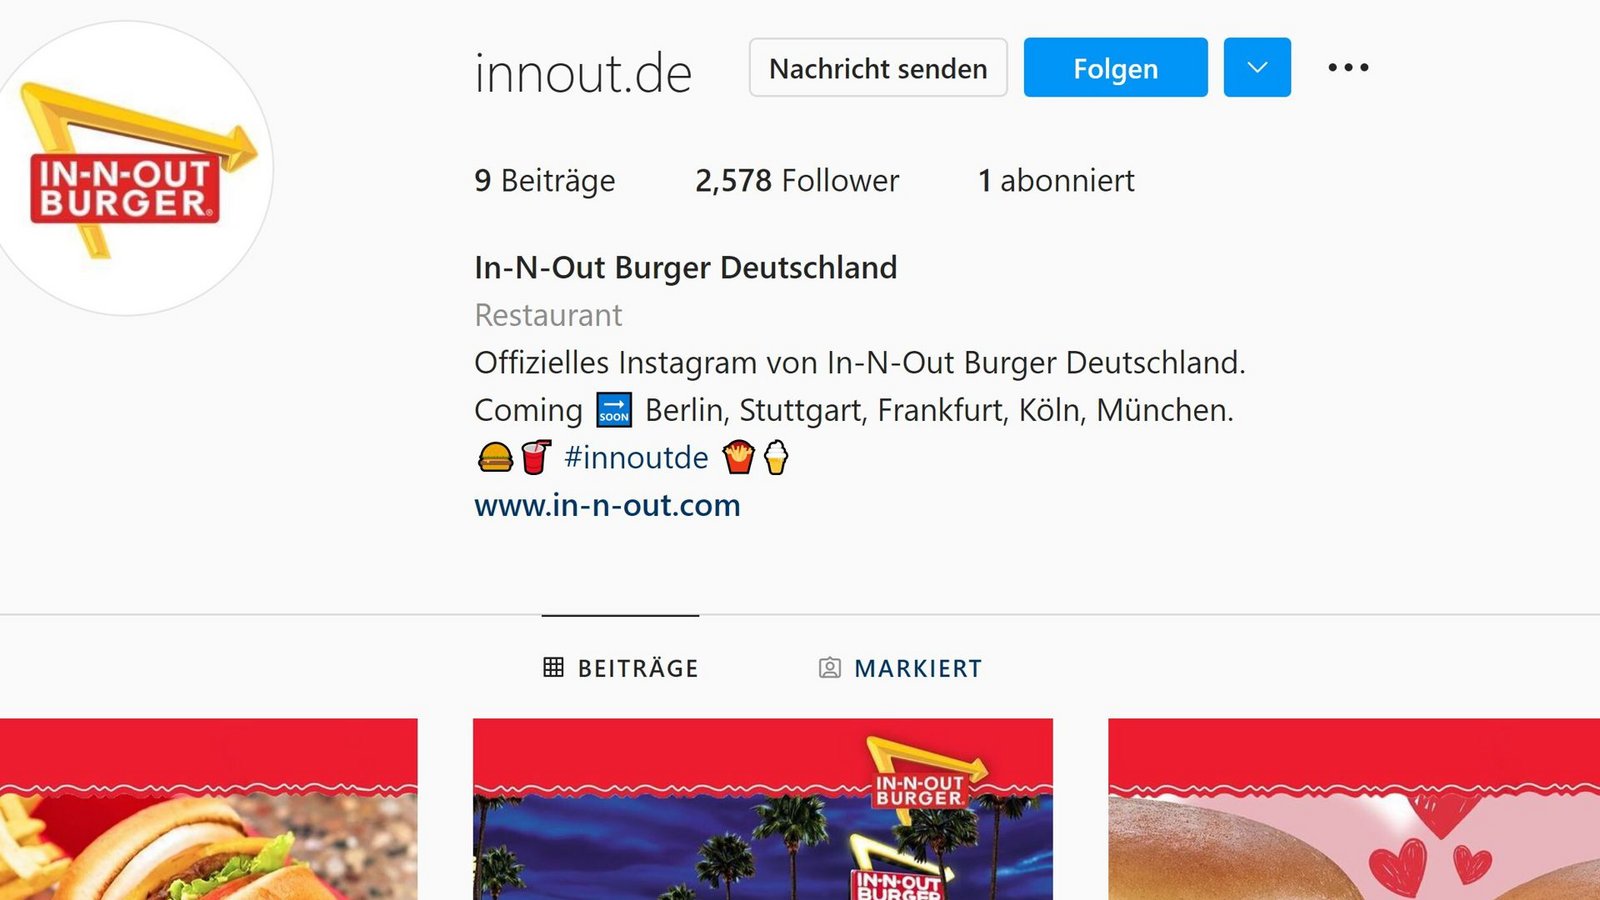 Das gefälschte In-N-Out-Profil auf Instagram sieht aus wie echt, ist aber von Betrügern erstellt worden.Foto: Instagram/Screenshot